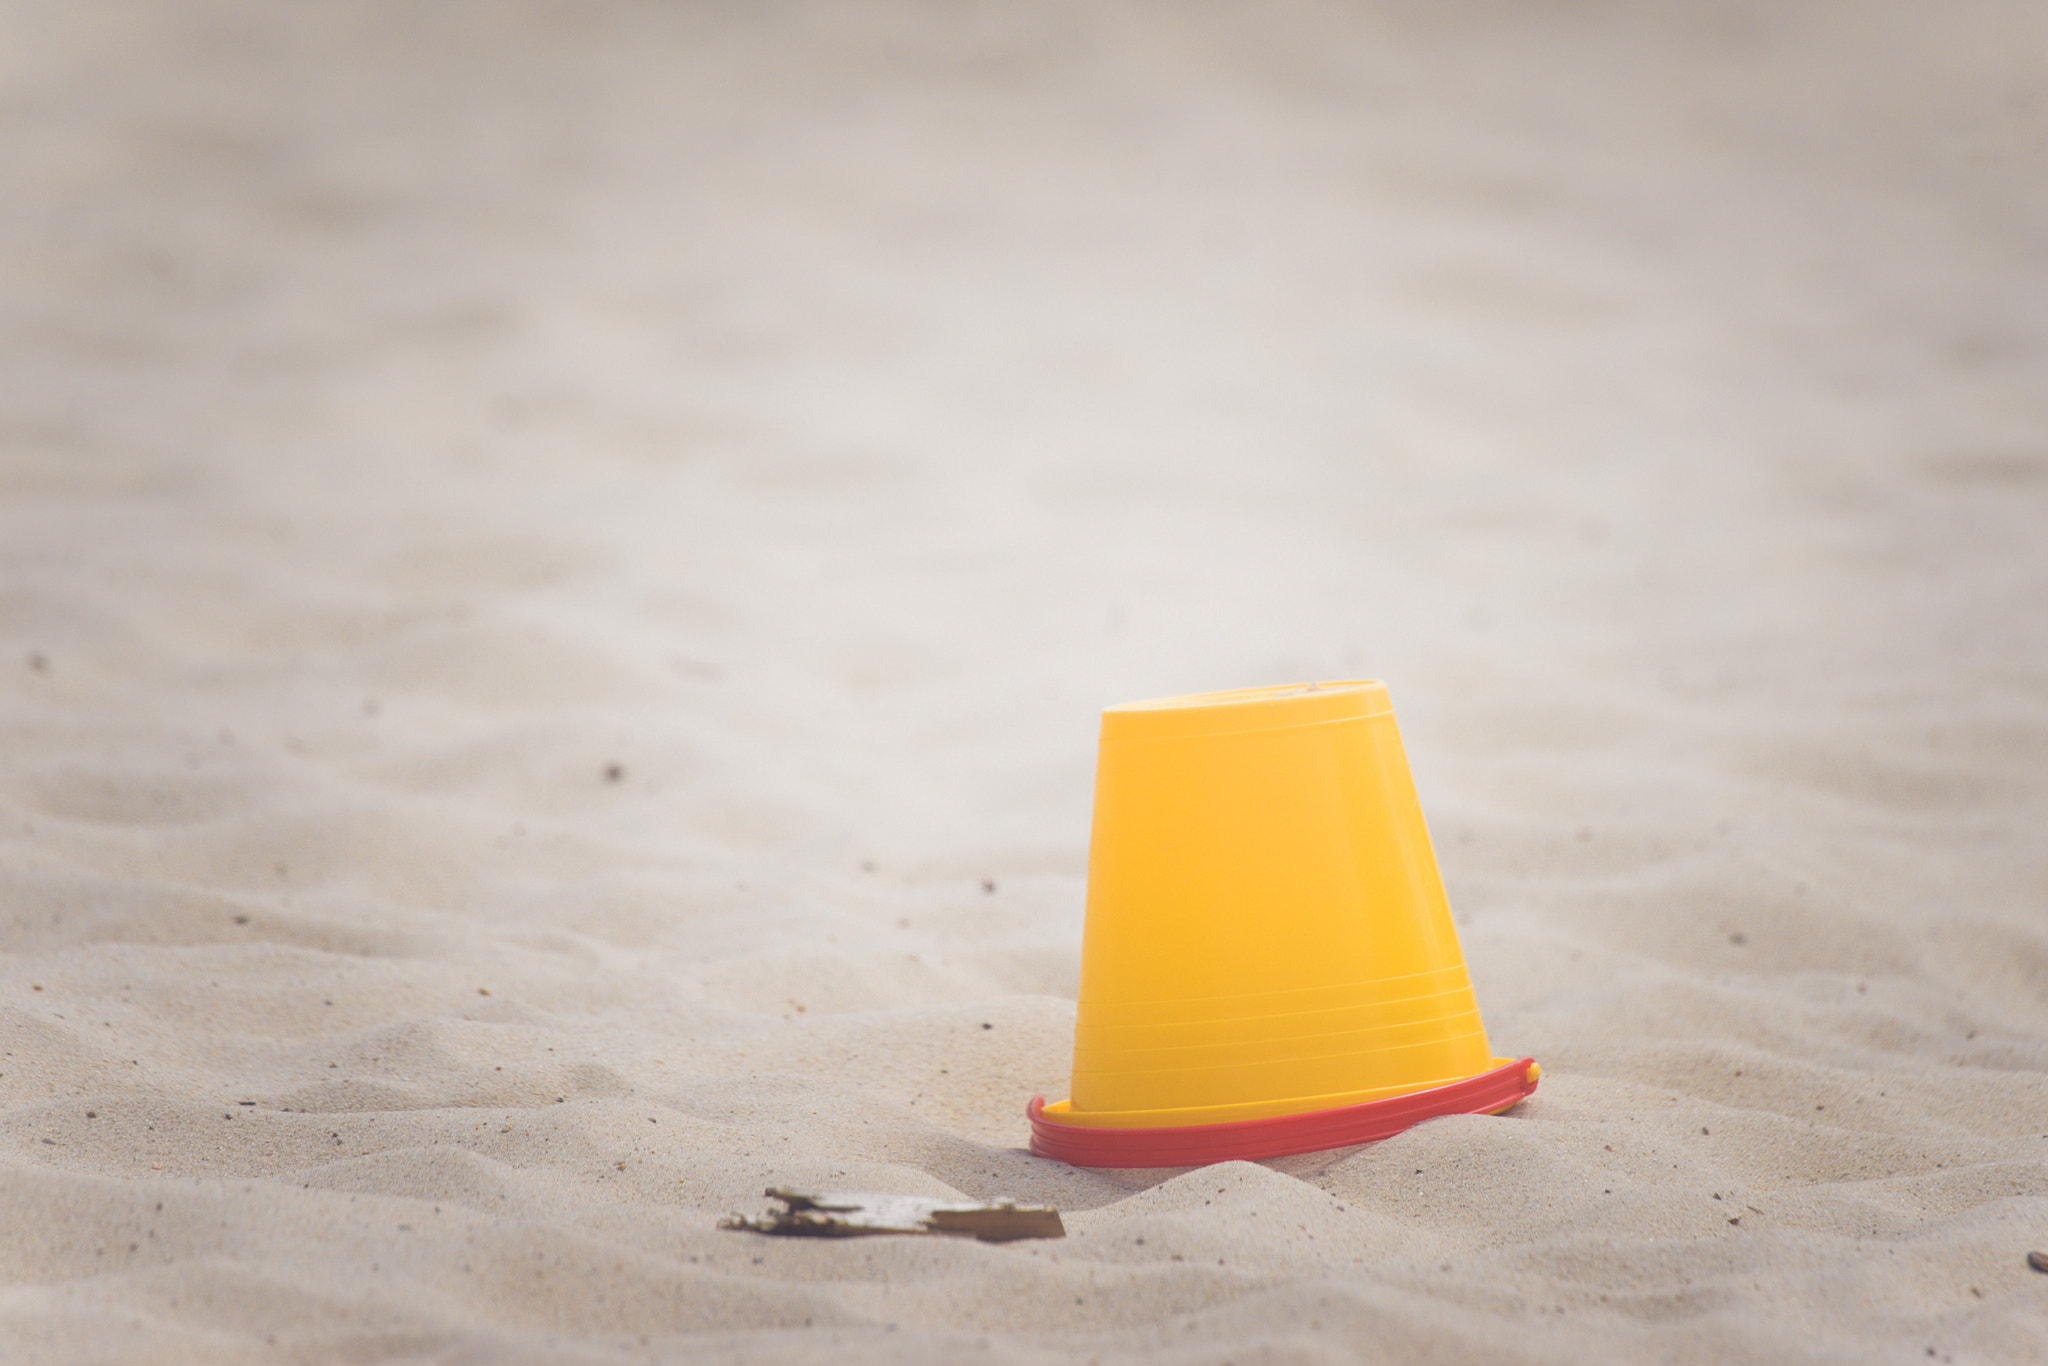 Sony Alpha DSLR-A900 sample photo. Yellow bucket on a beach photography